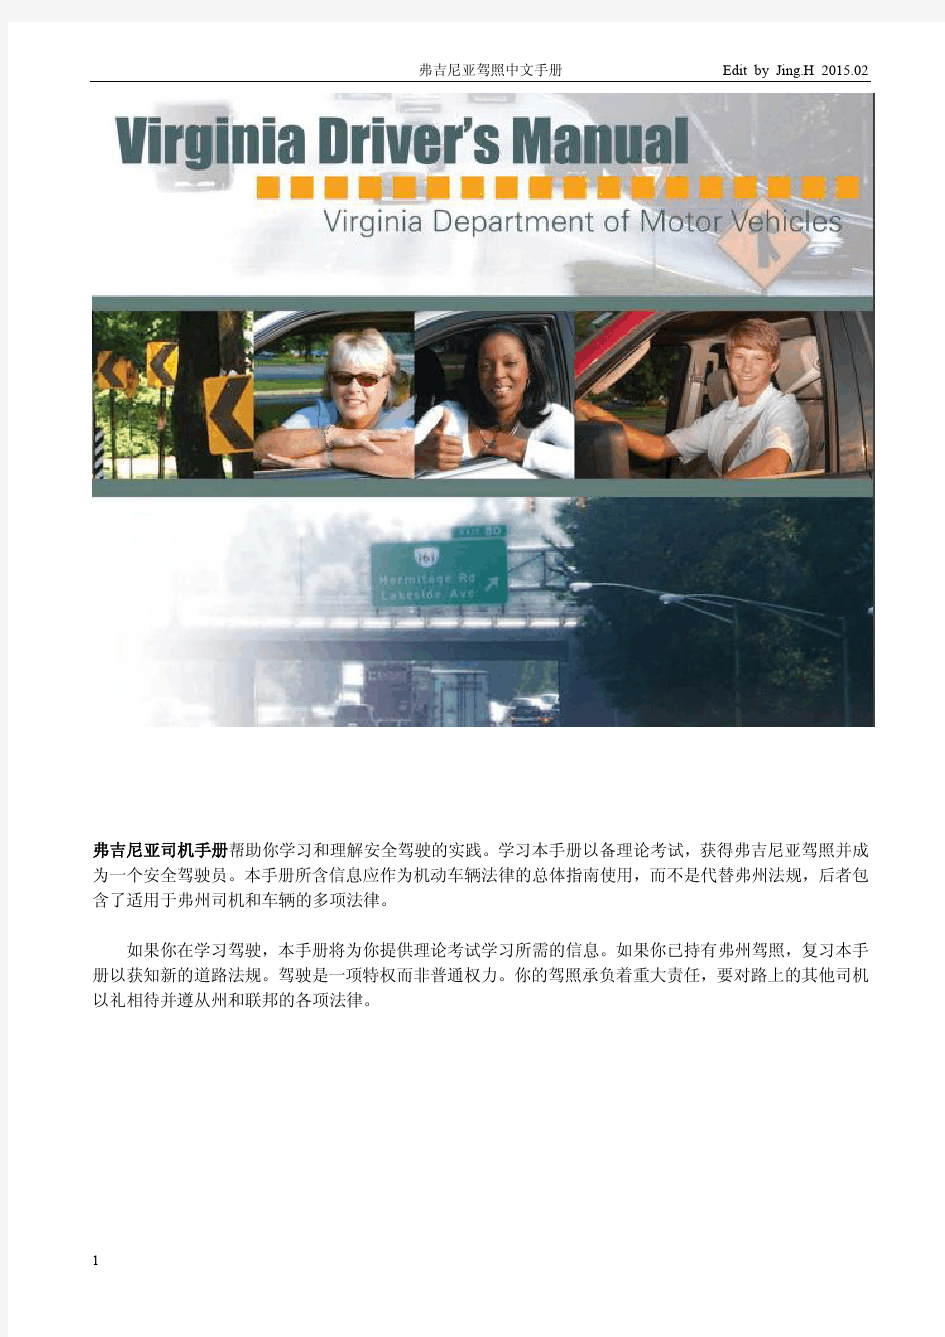 美国弗吉尼亚驾照考试中文手册